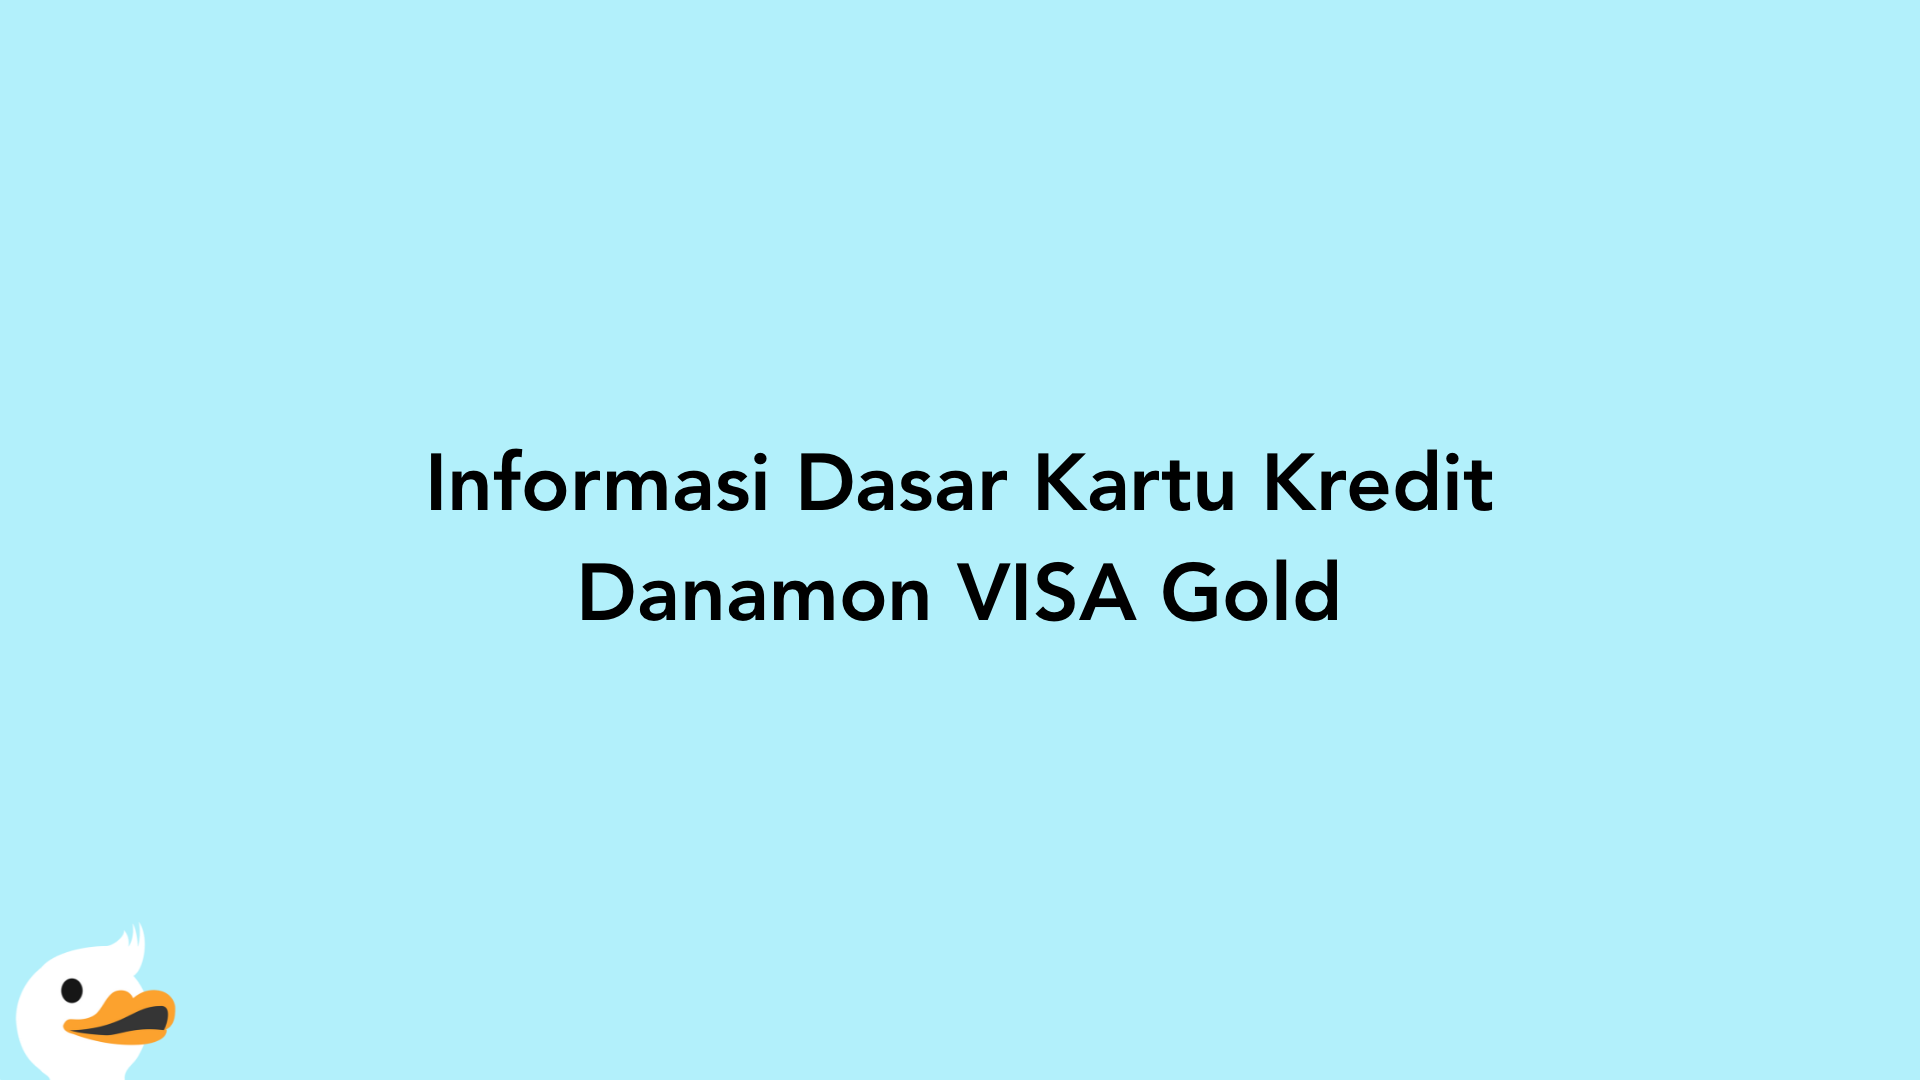 Informasi Dasar Kartu Kredit Danamon VISA Gold